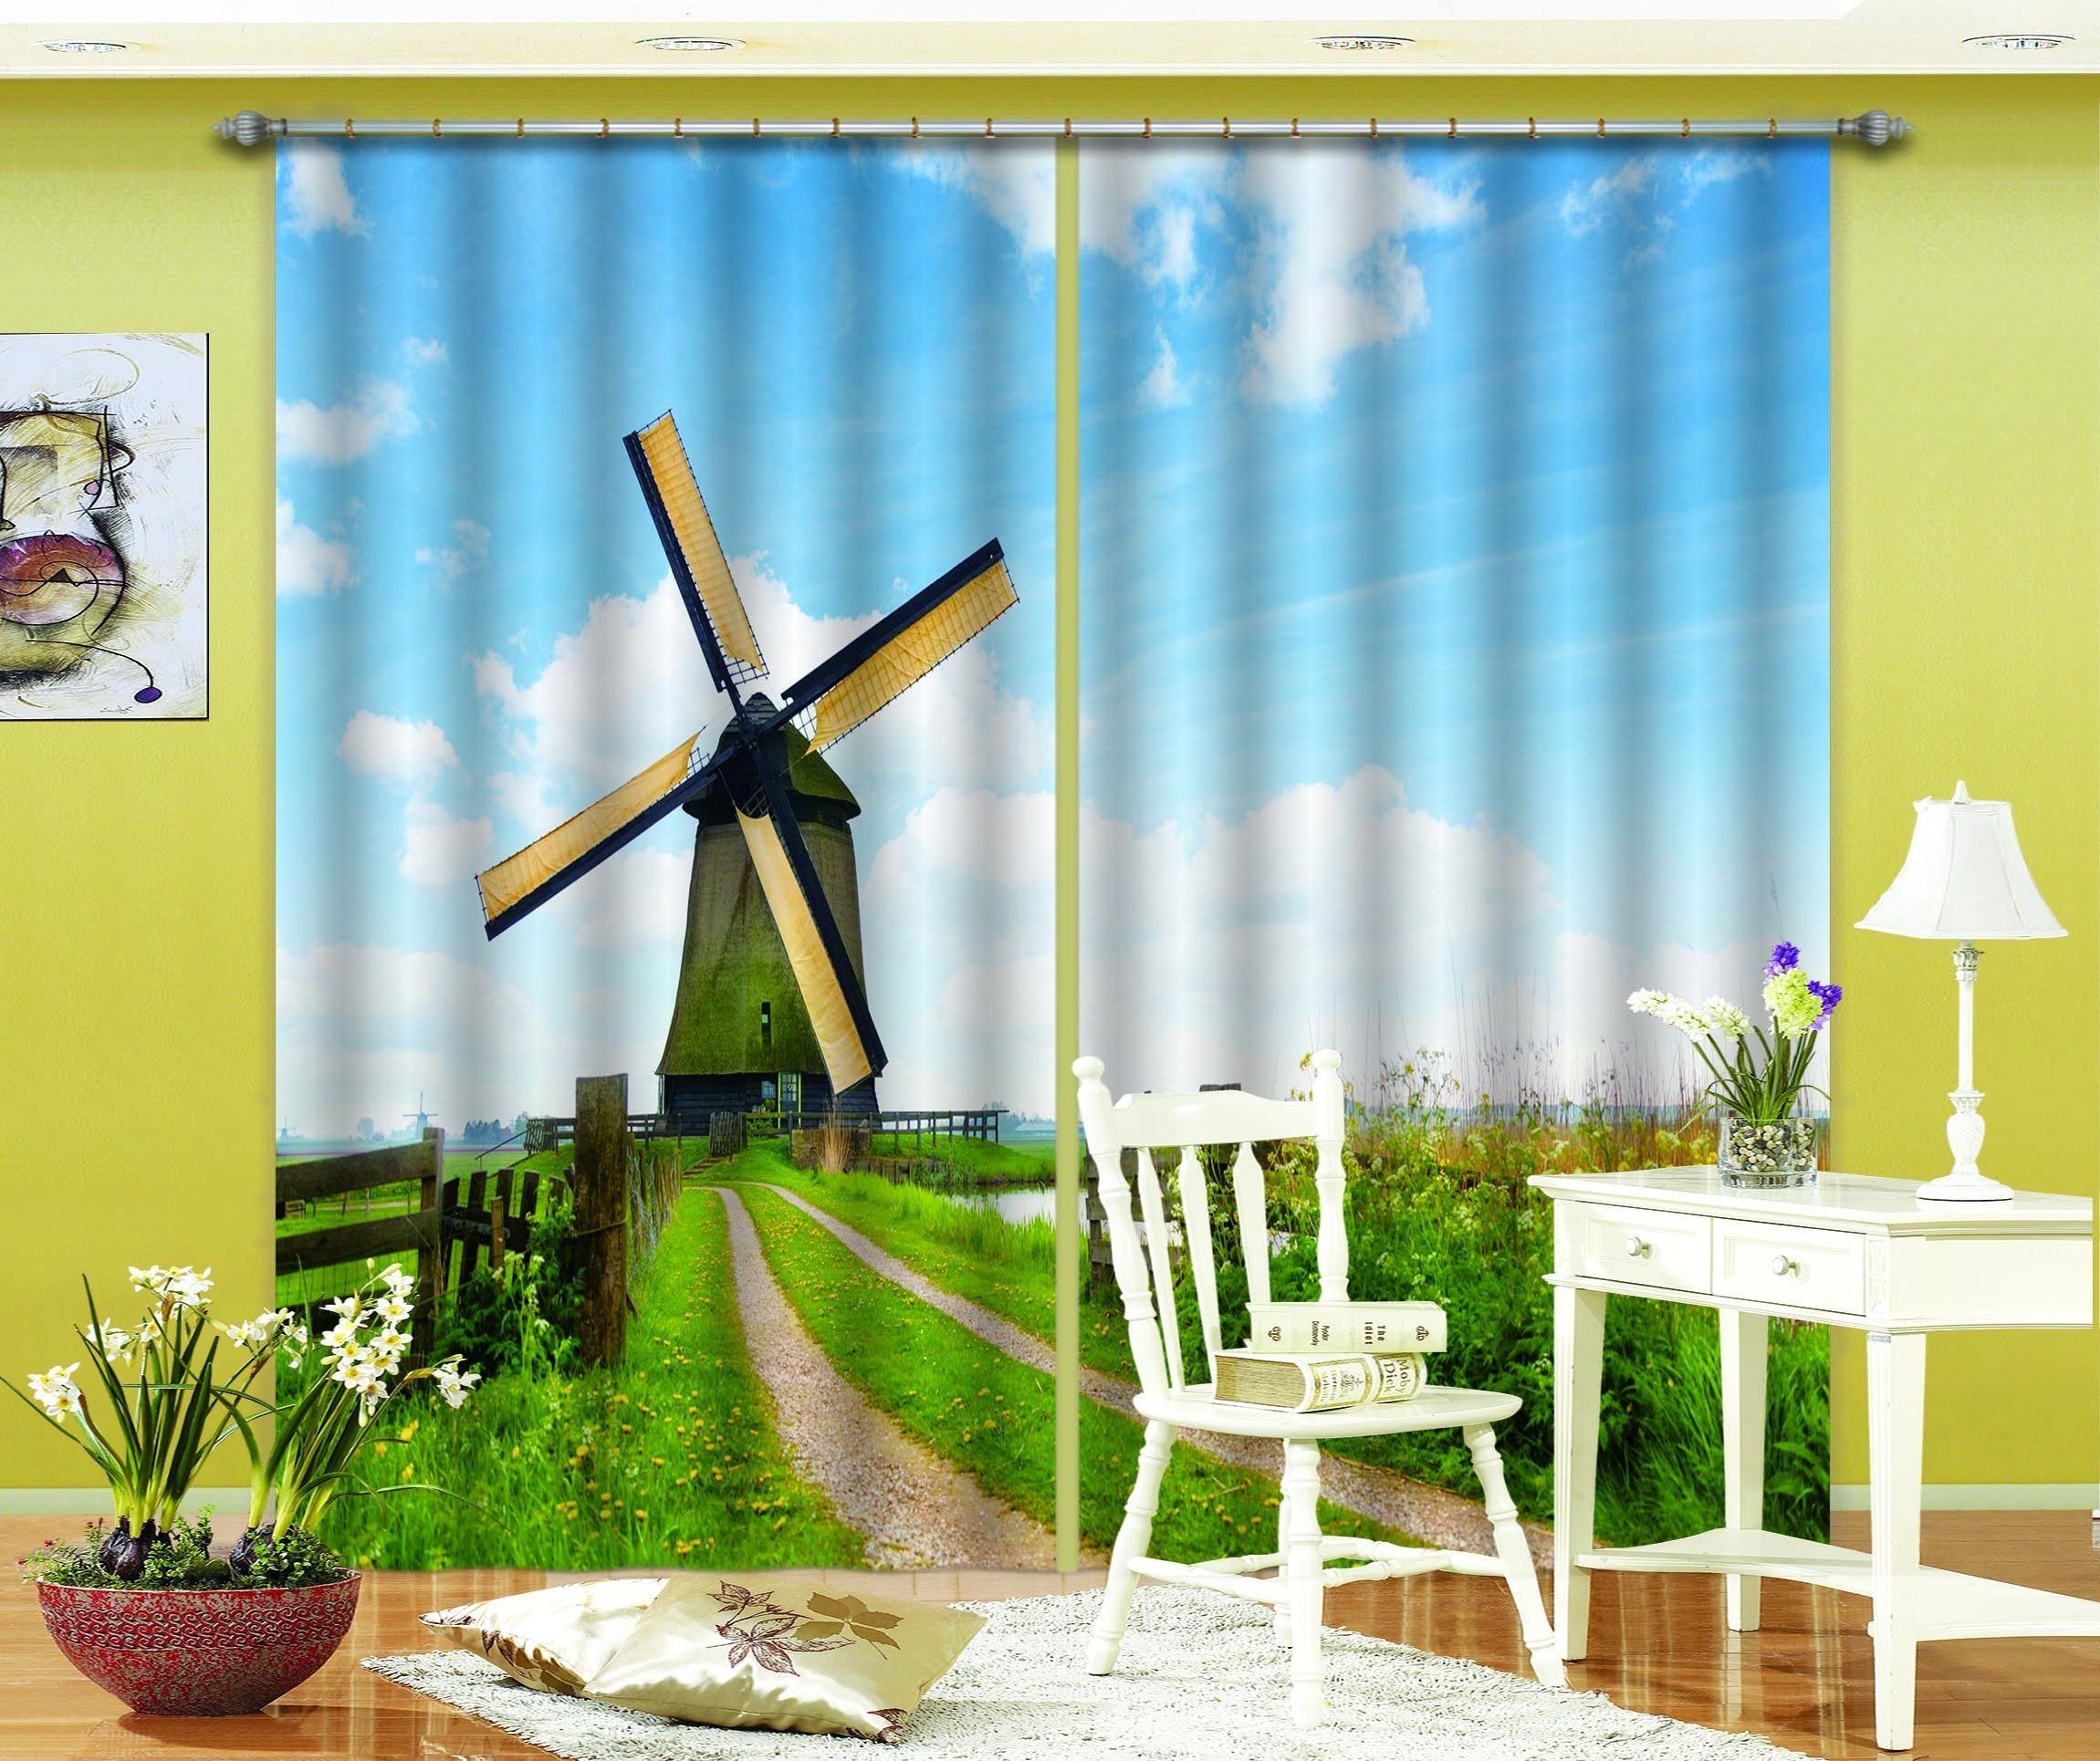 3D Windmill Scenery 801 Curtains Drapes Wallpaper AJ Wallpaper 